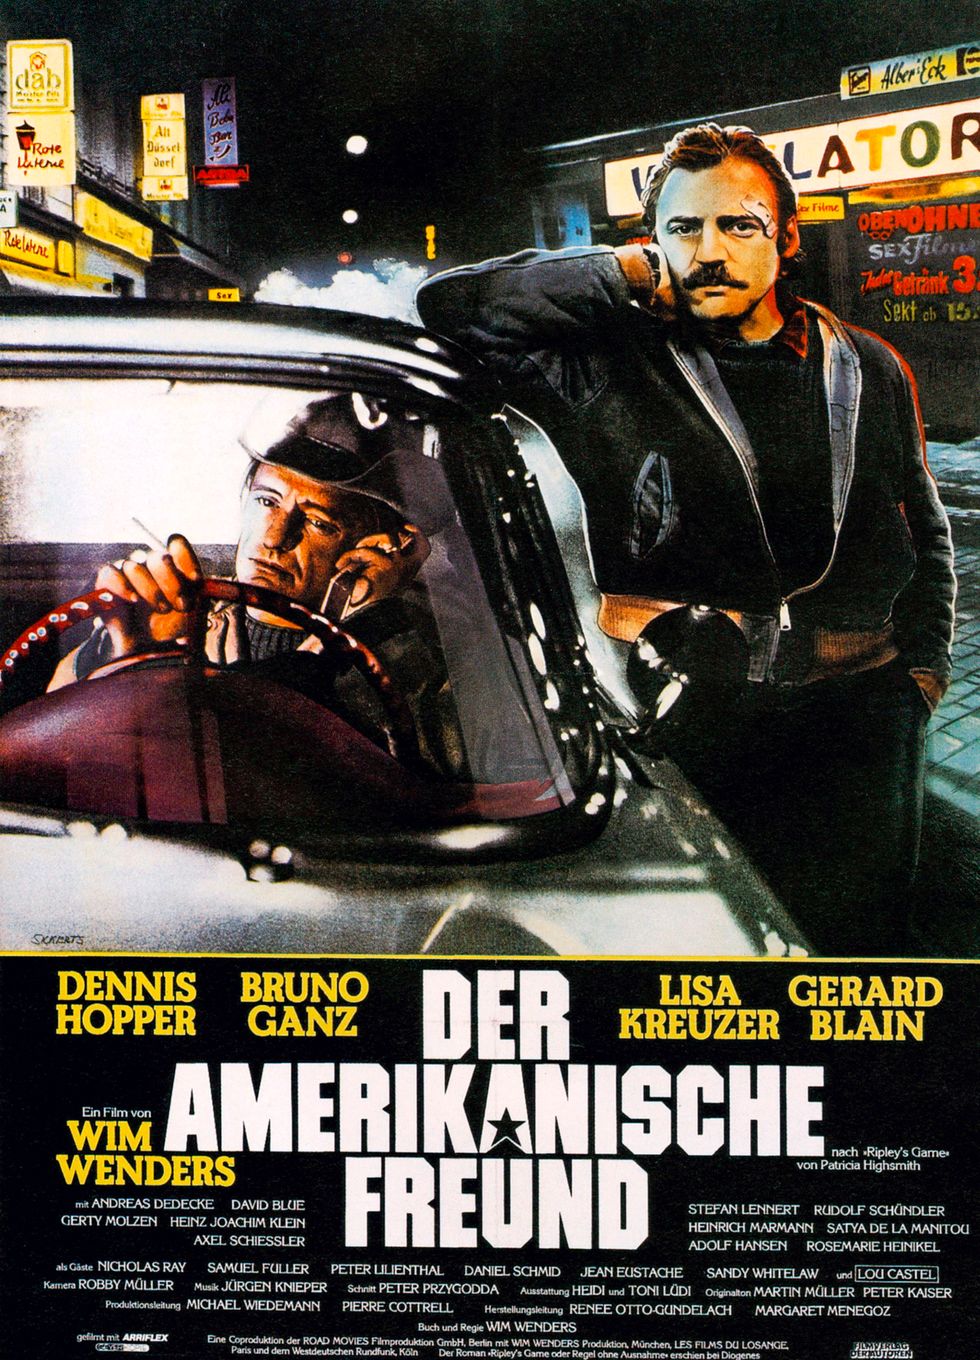 the american friend, poster, aka der amerikanische freund, dennis hopper, bruno ganz, 1977 photo by lmpc via getty images